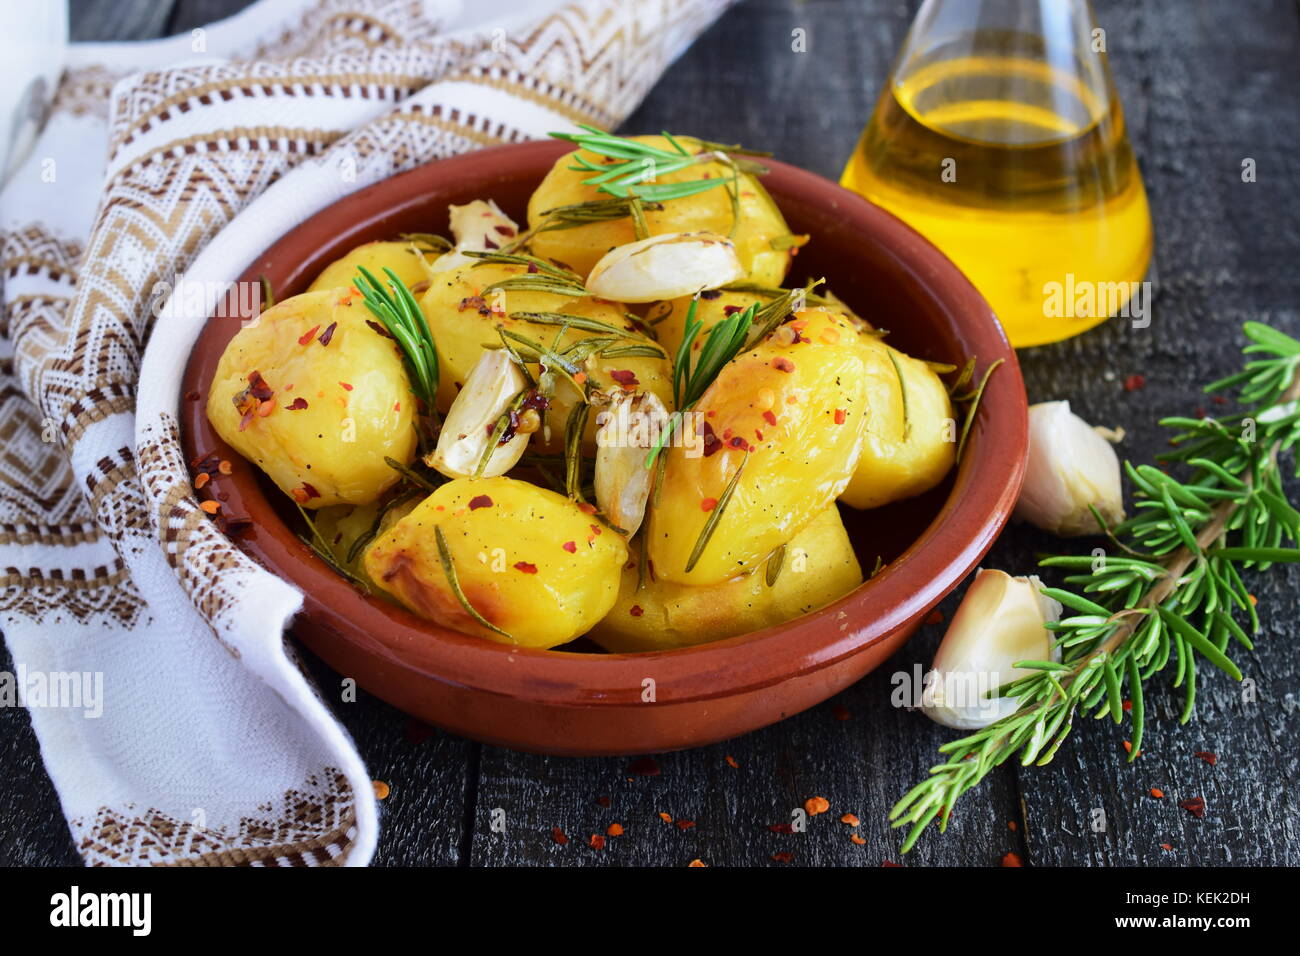 Ofen zubereitet Kartoffeln mit Rosmarin, Knoblauch, Olivenöl und Gewürzen  in einem traditionellen Keramik Schüssel. mediterrane Lebensart. gesunde  Ernährung Konzept Stockfotografie - Alamy